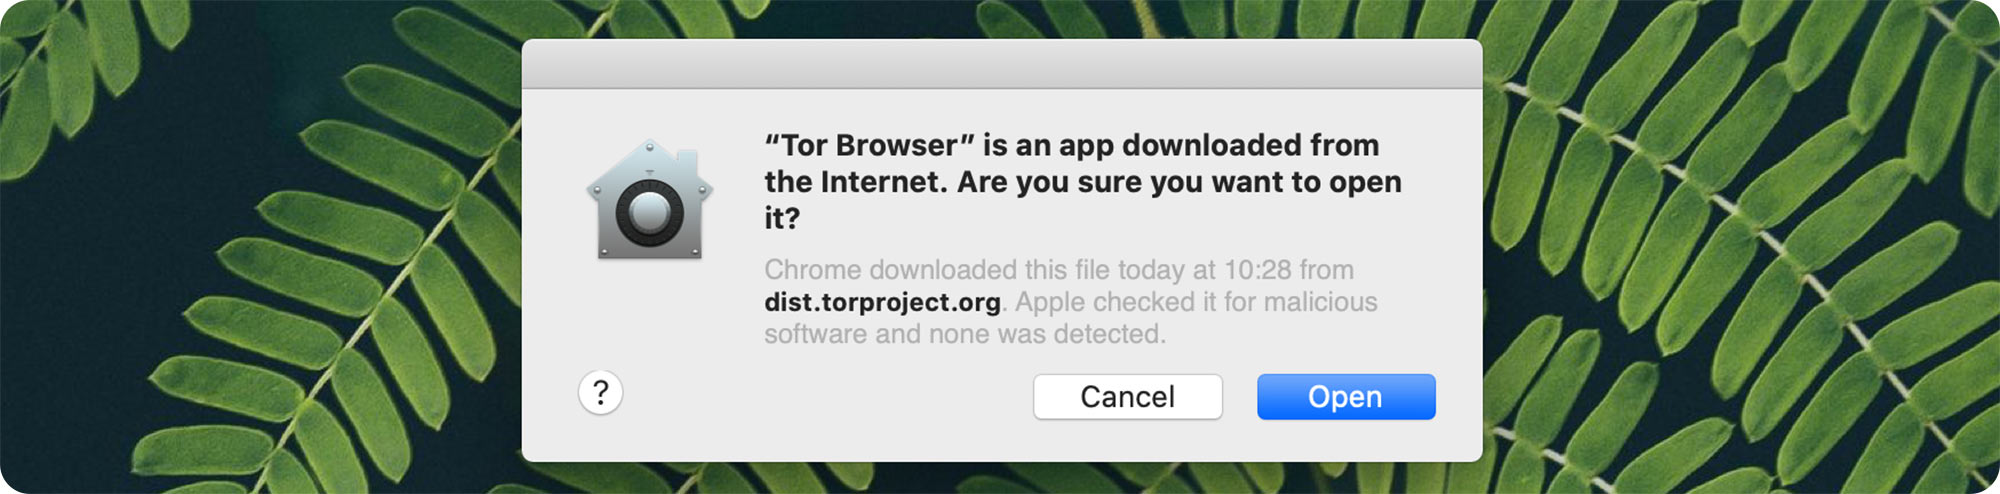 Start tor browser для mac hydra тор браузер на виндовс фон гидра